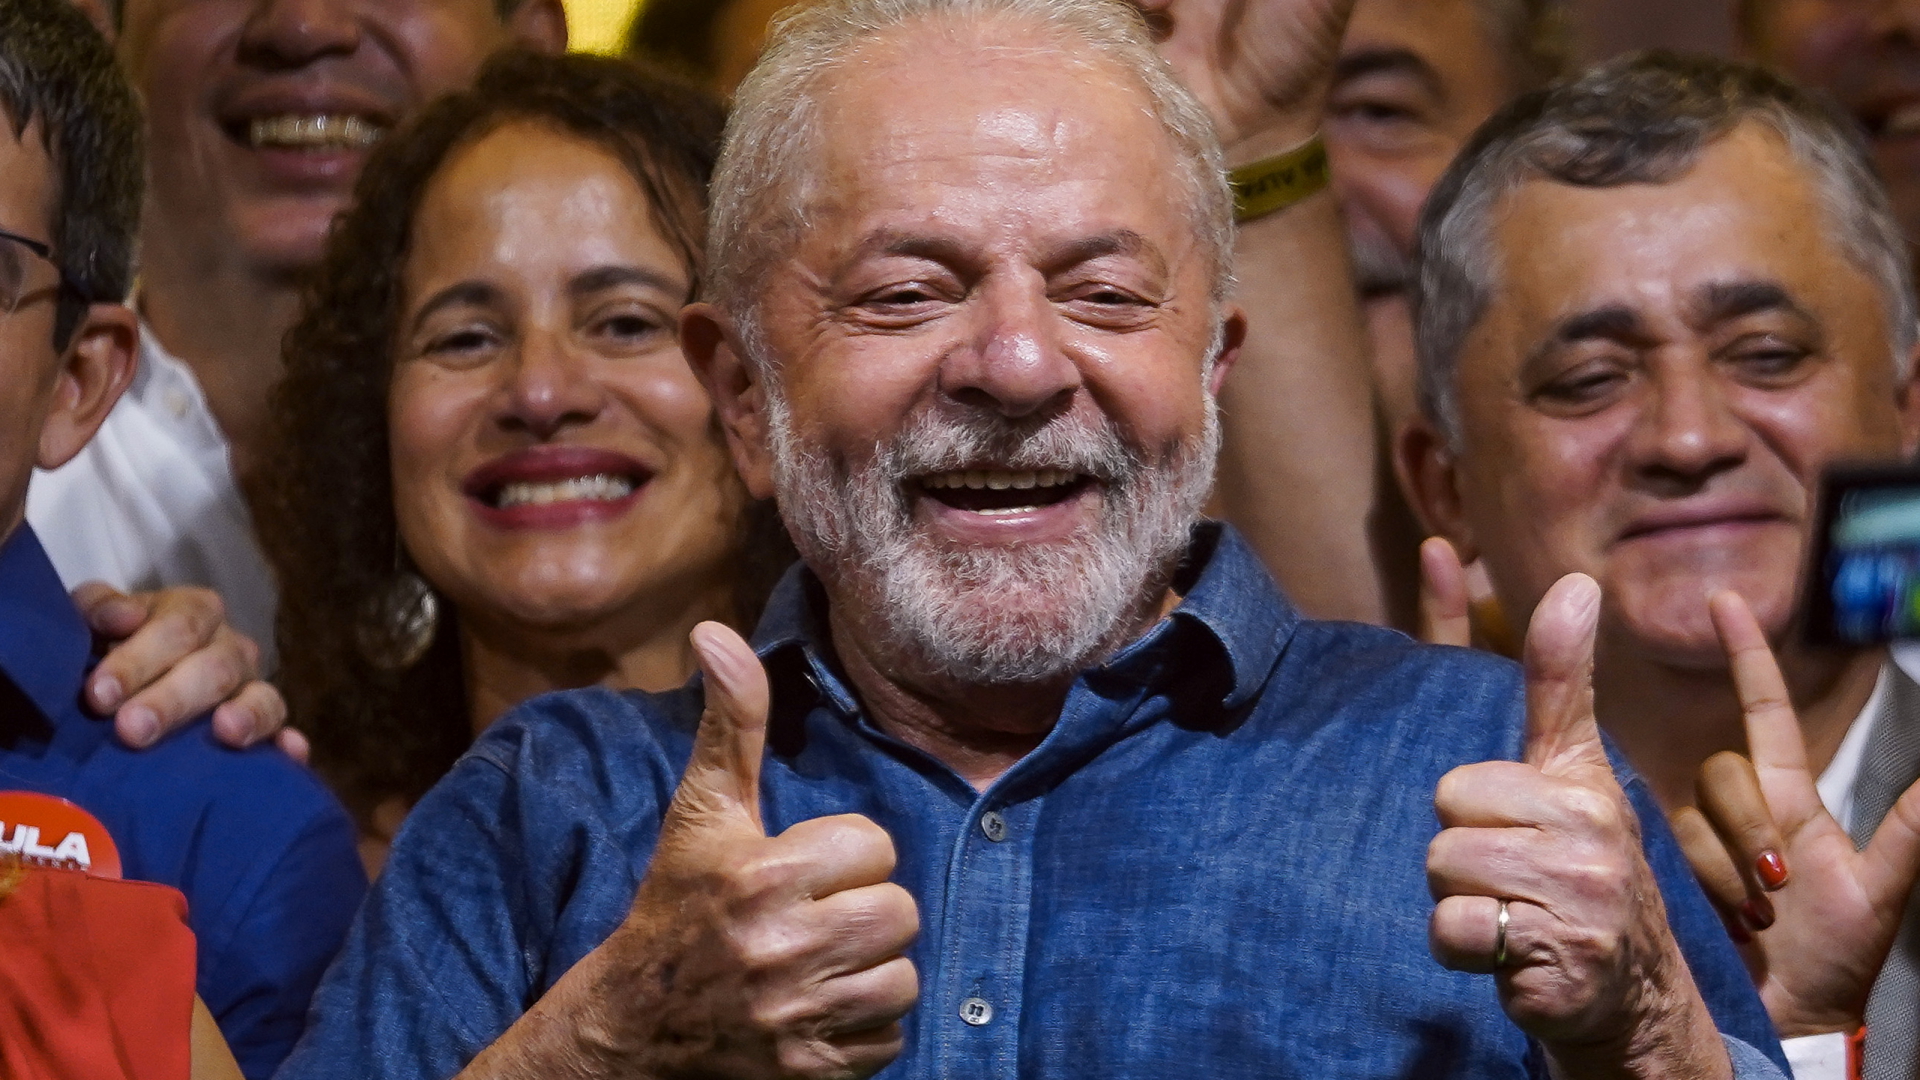 Wahlgewinner Lula mit Anhängern | dpa